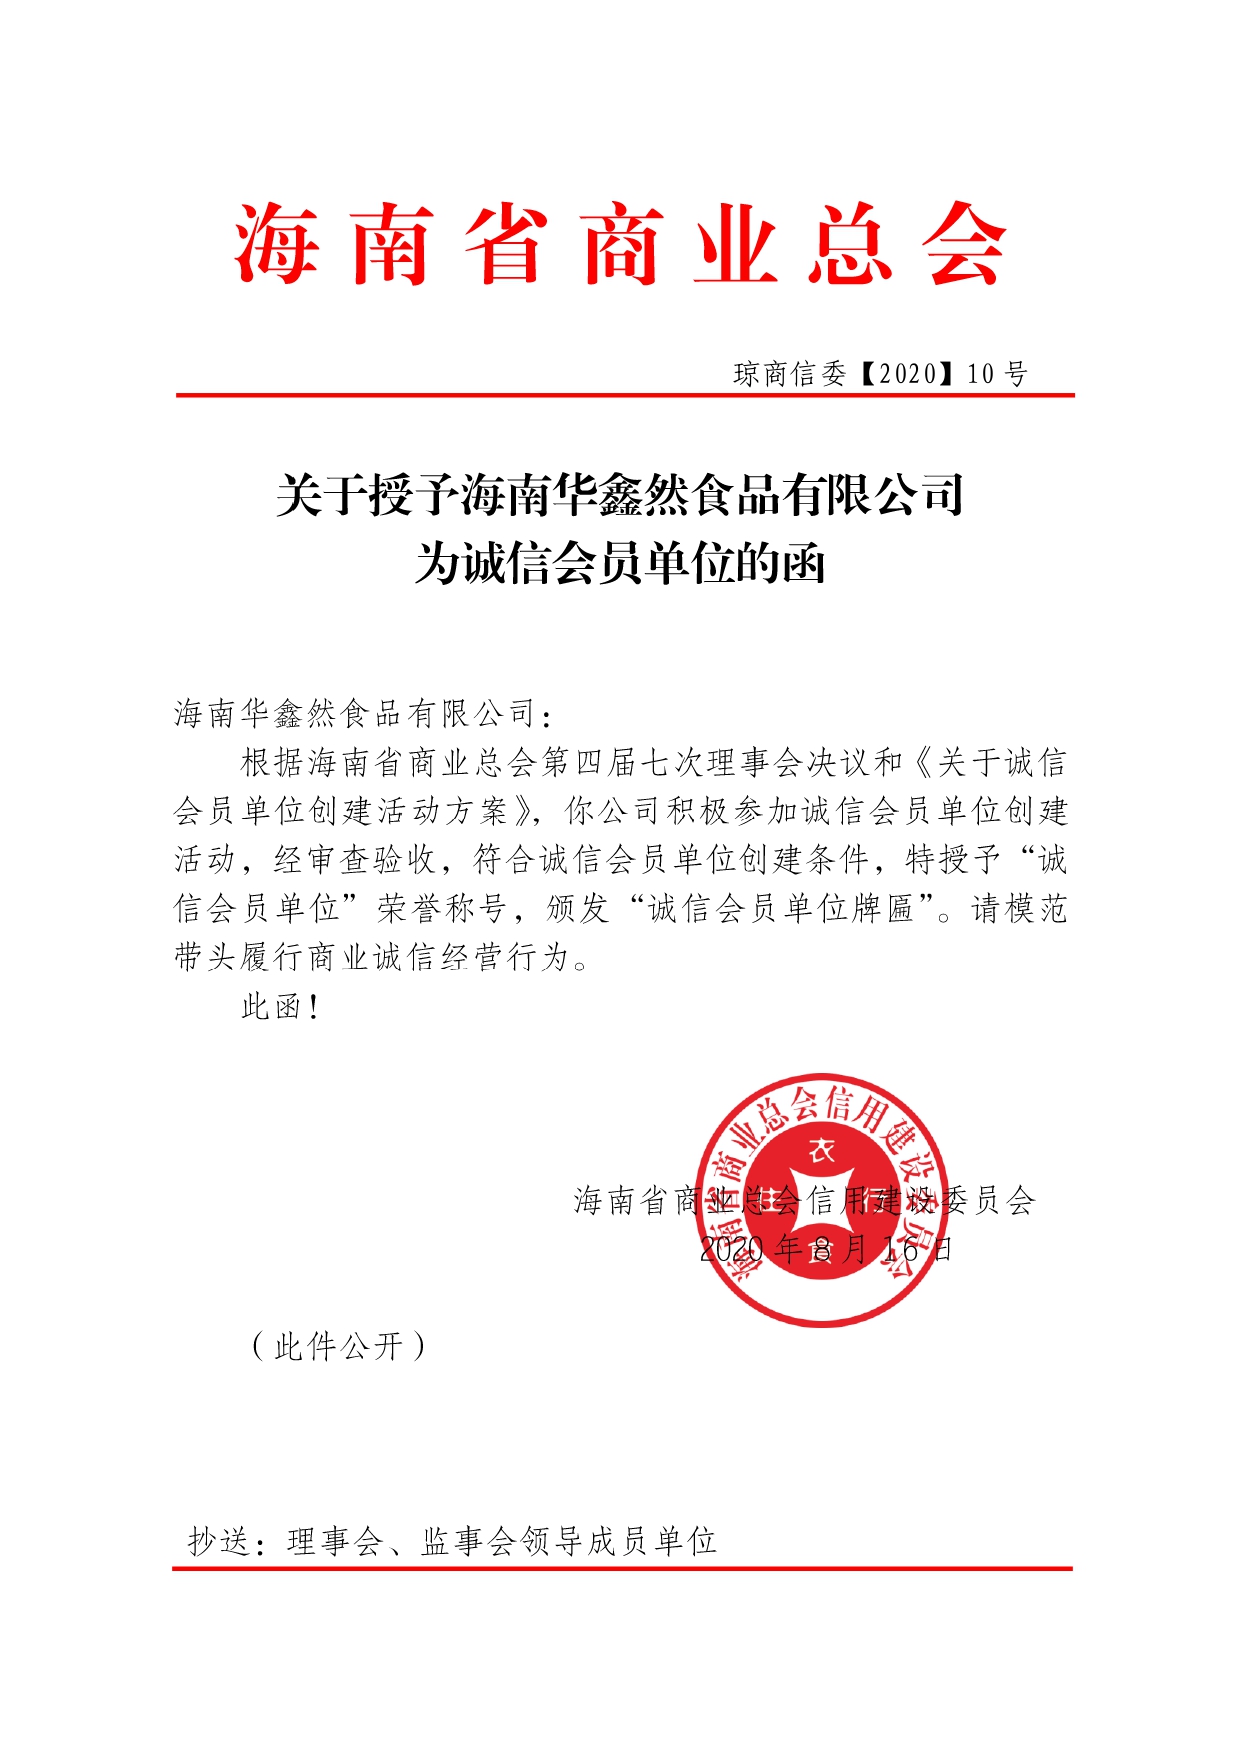 关于授予海南华鑫然食品有限公司为诚信会员单位的函